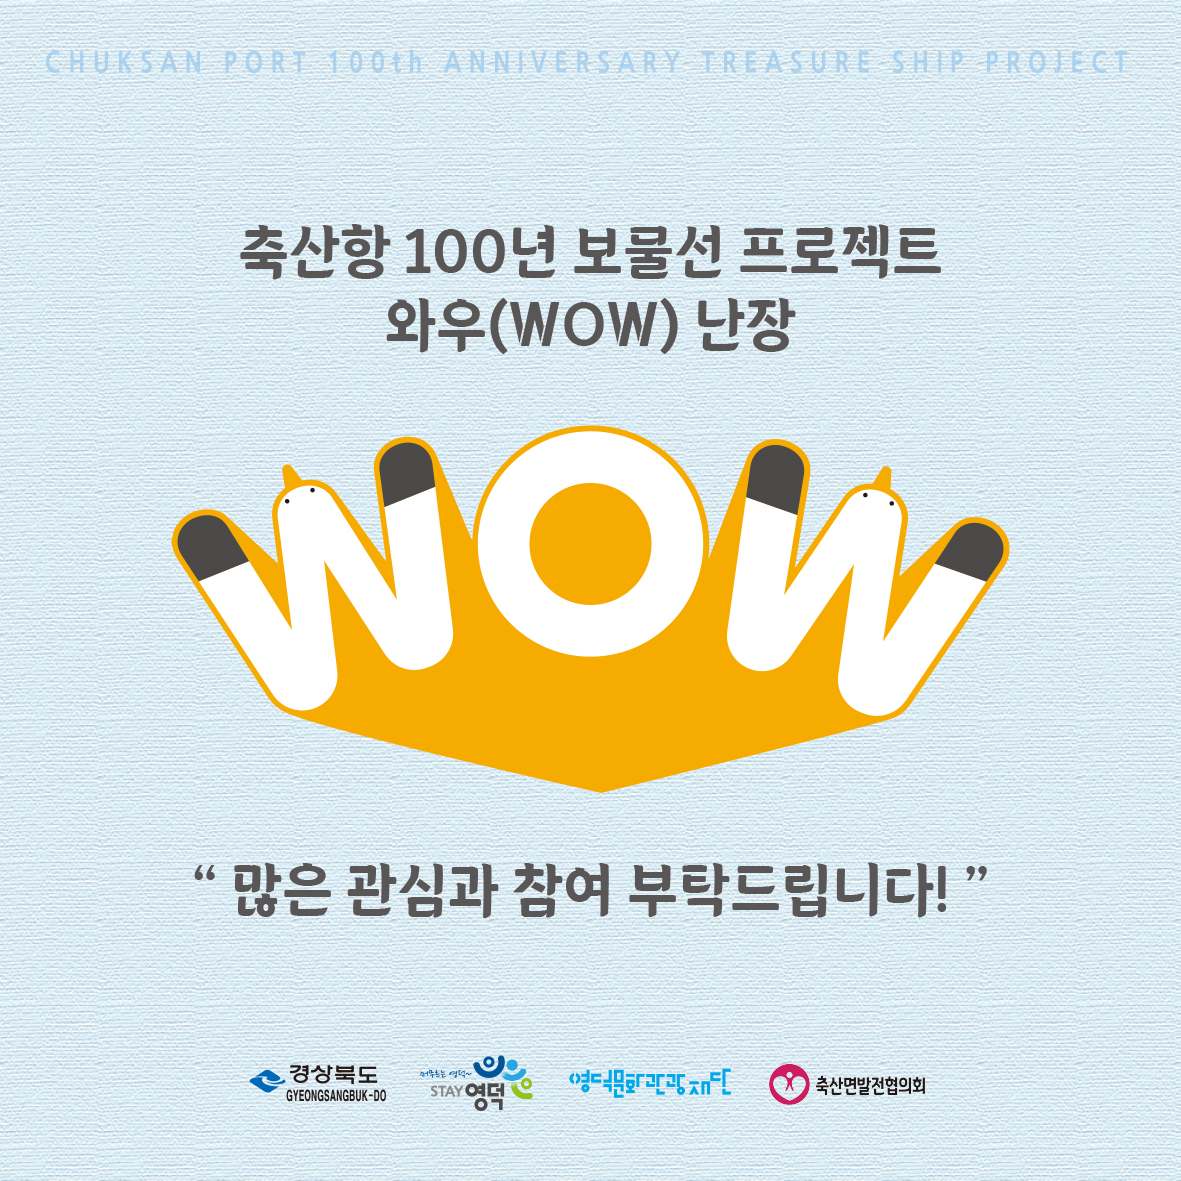 🌊축산항 개항 100년 기념 보물선 프로젝트 와우(WOW) 난장!💙8